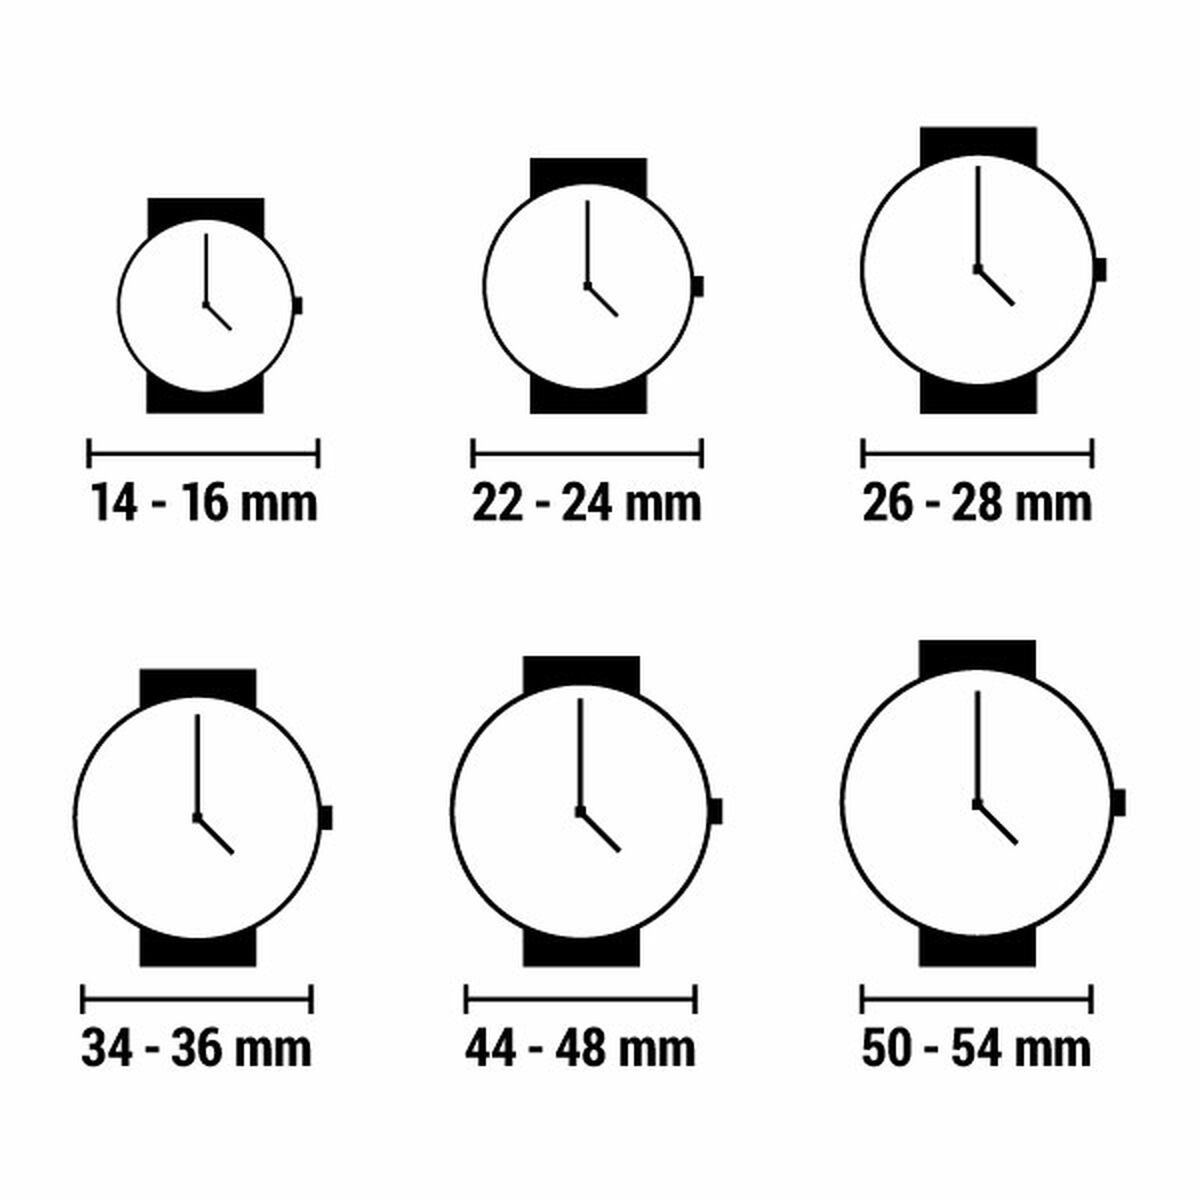 Horloge Dames Xernus C758023-N (Ø 30 mm)